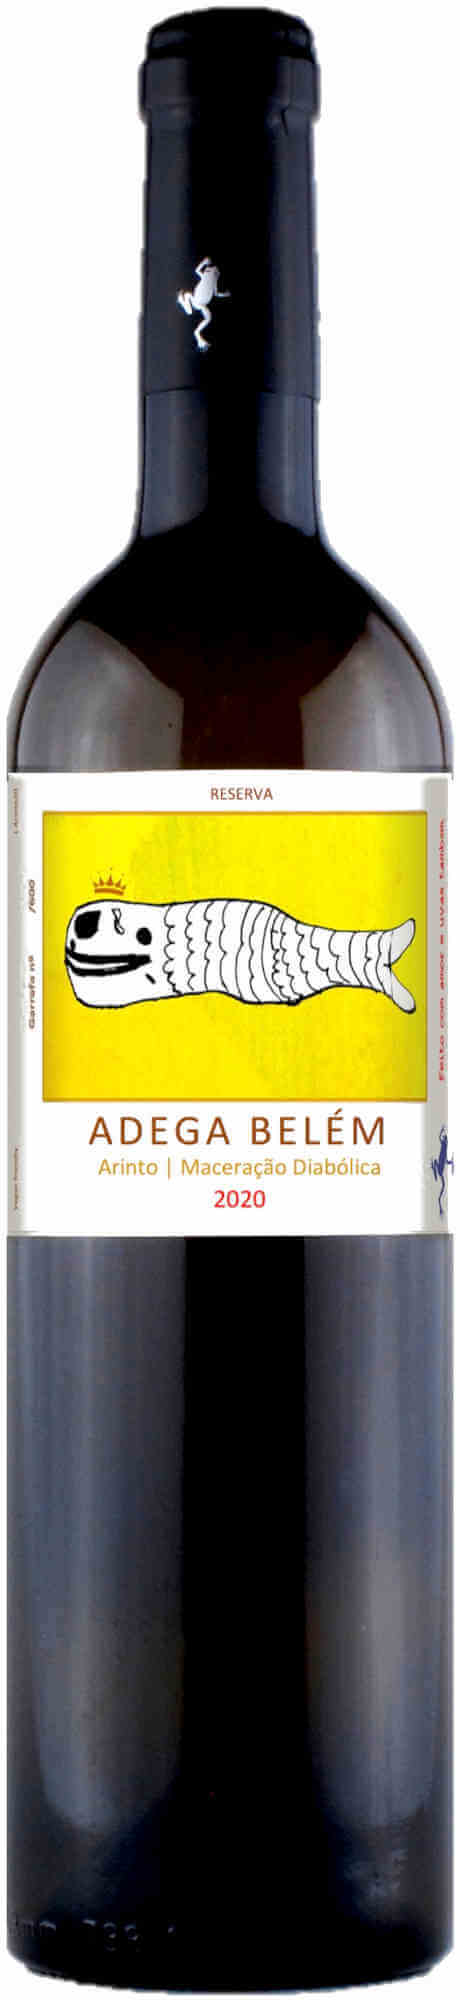 Belem-Arinto-Maceracao-Diabolica-2020